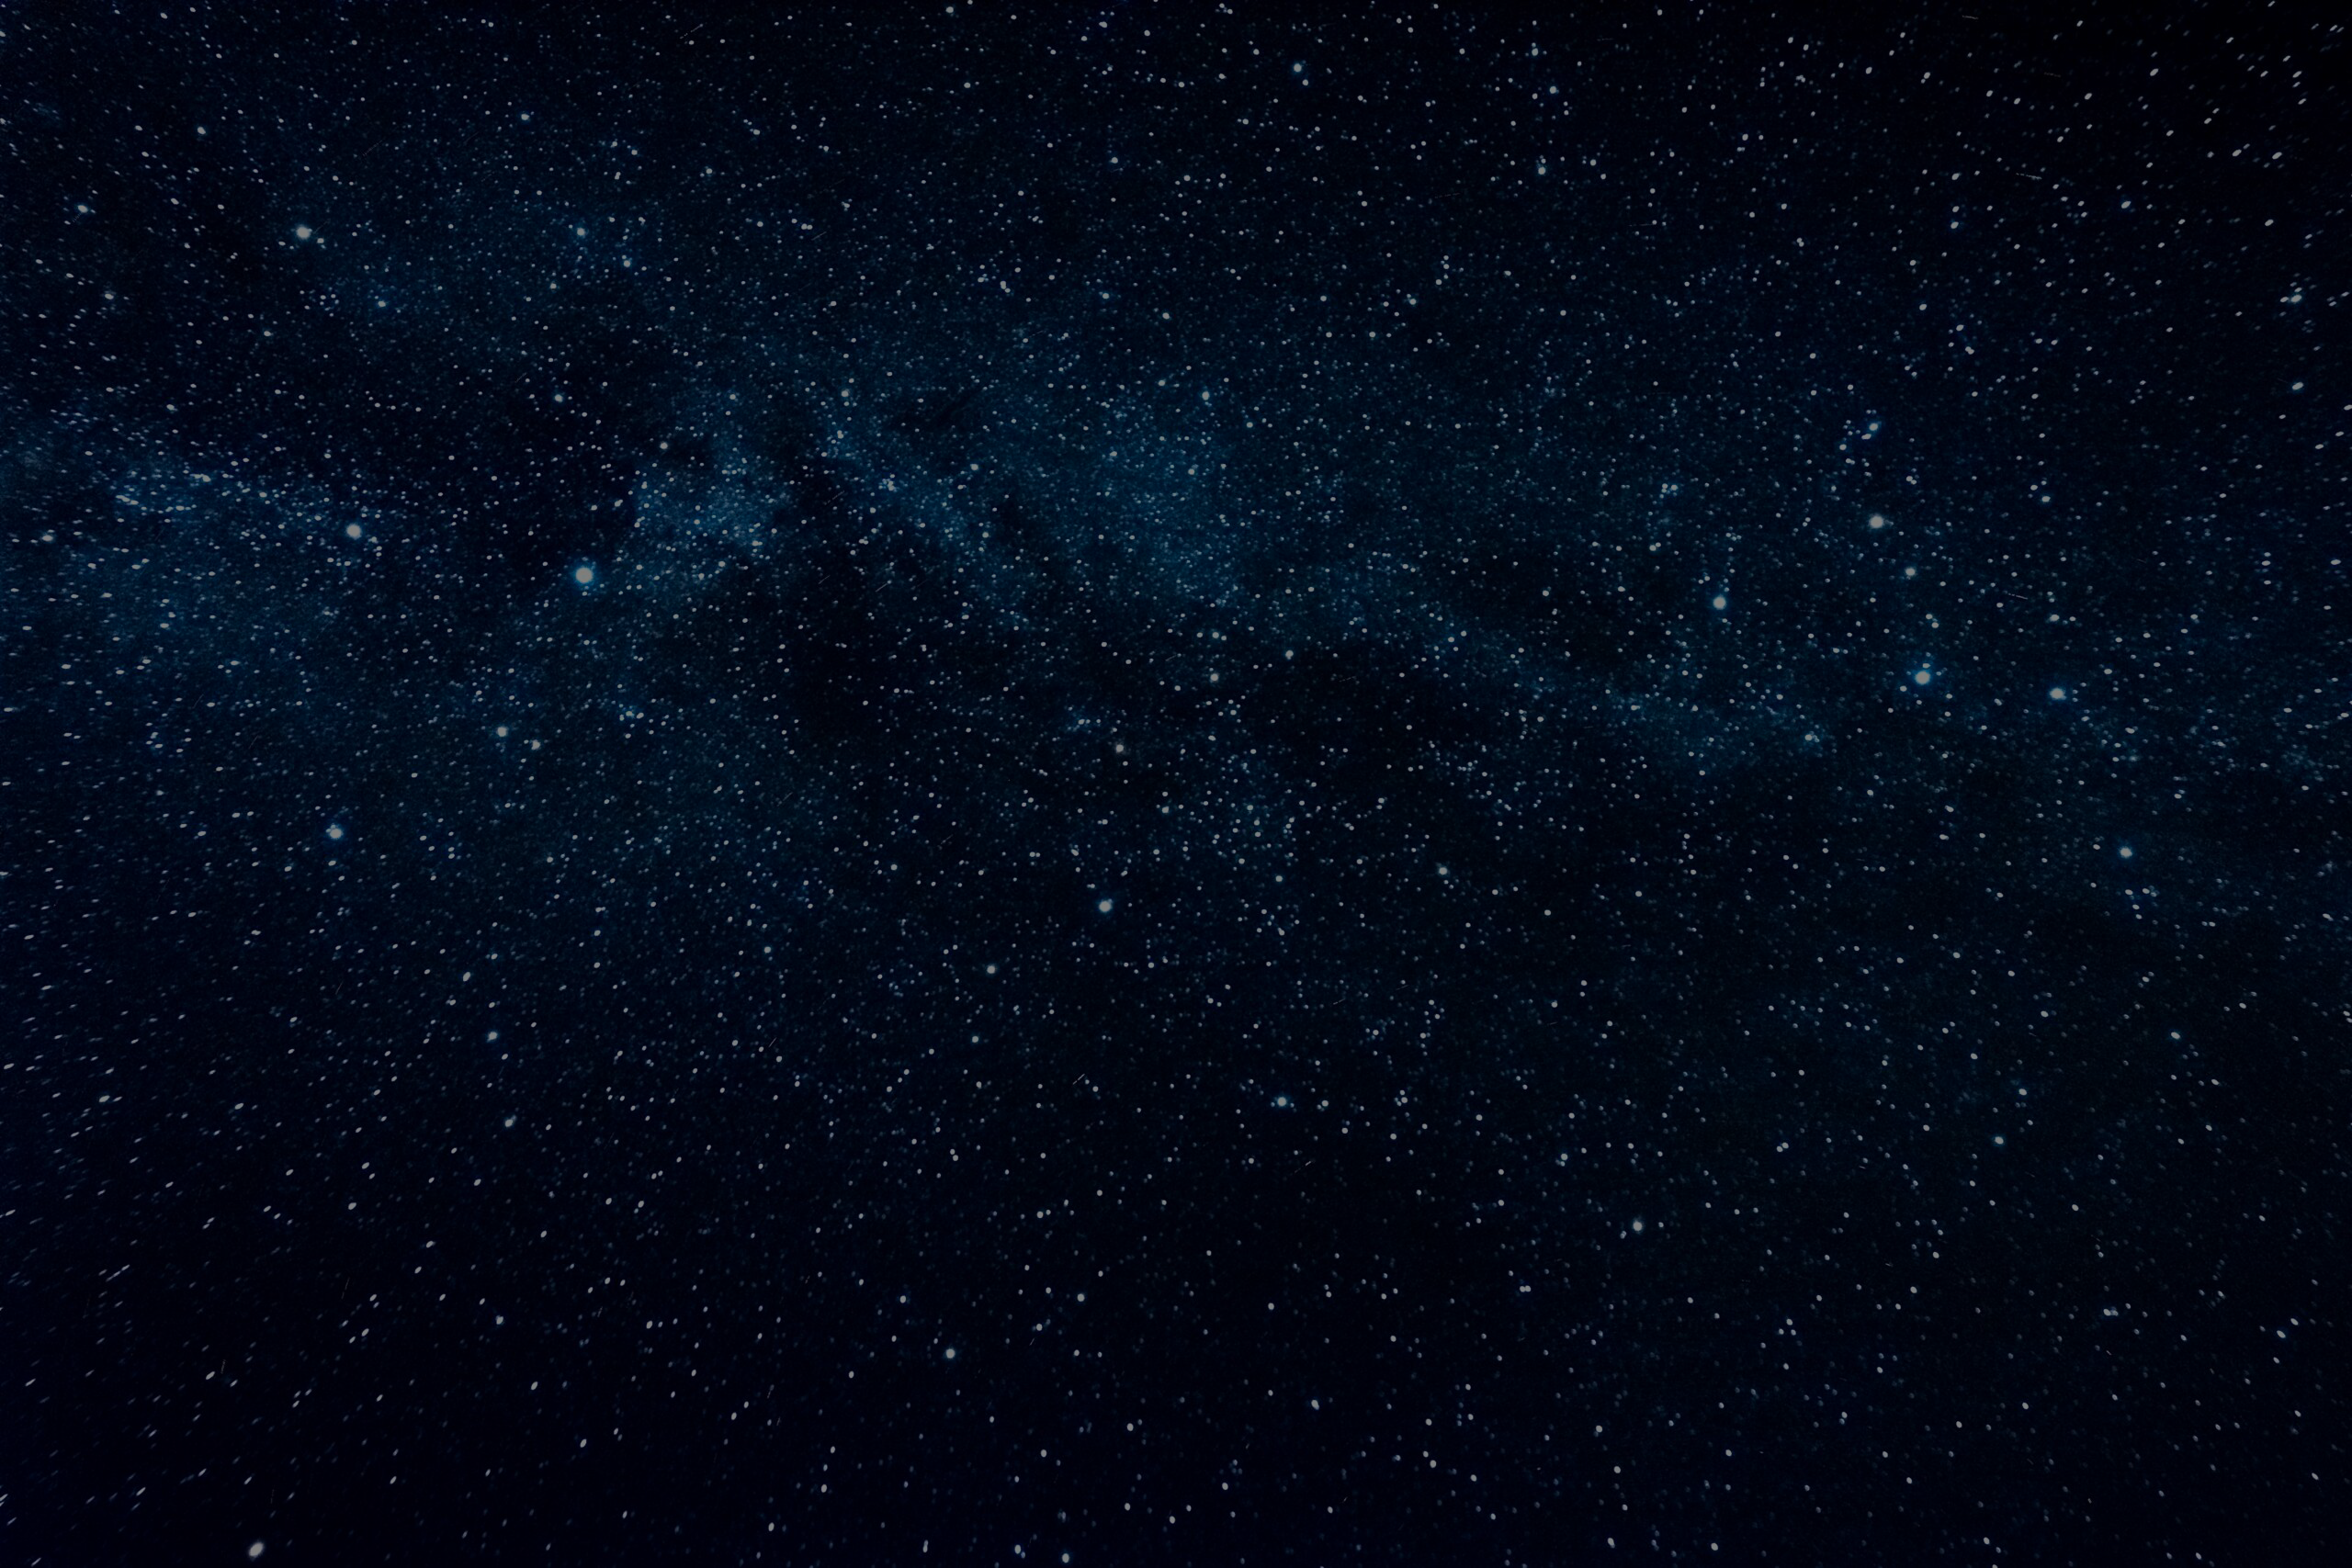 Stargaze on a Starry Night